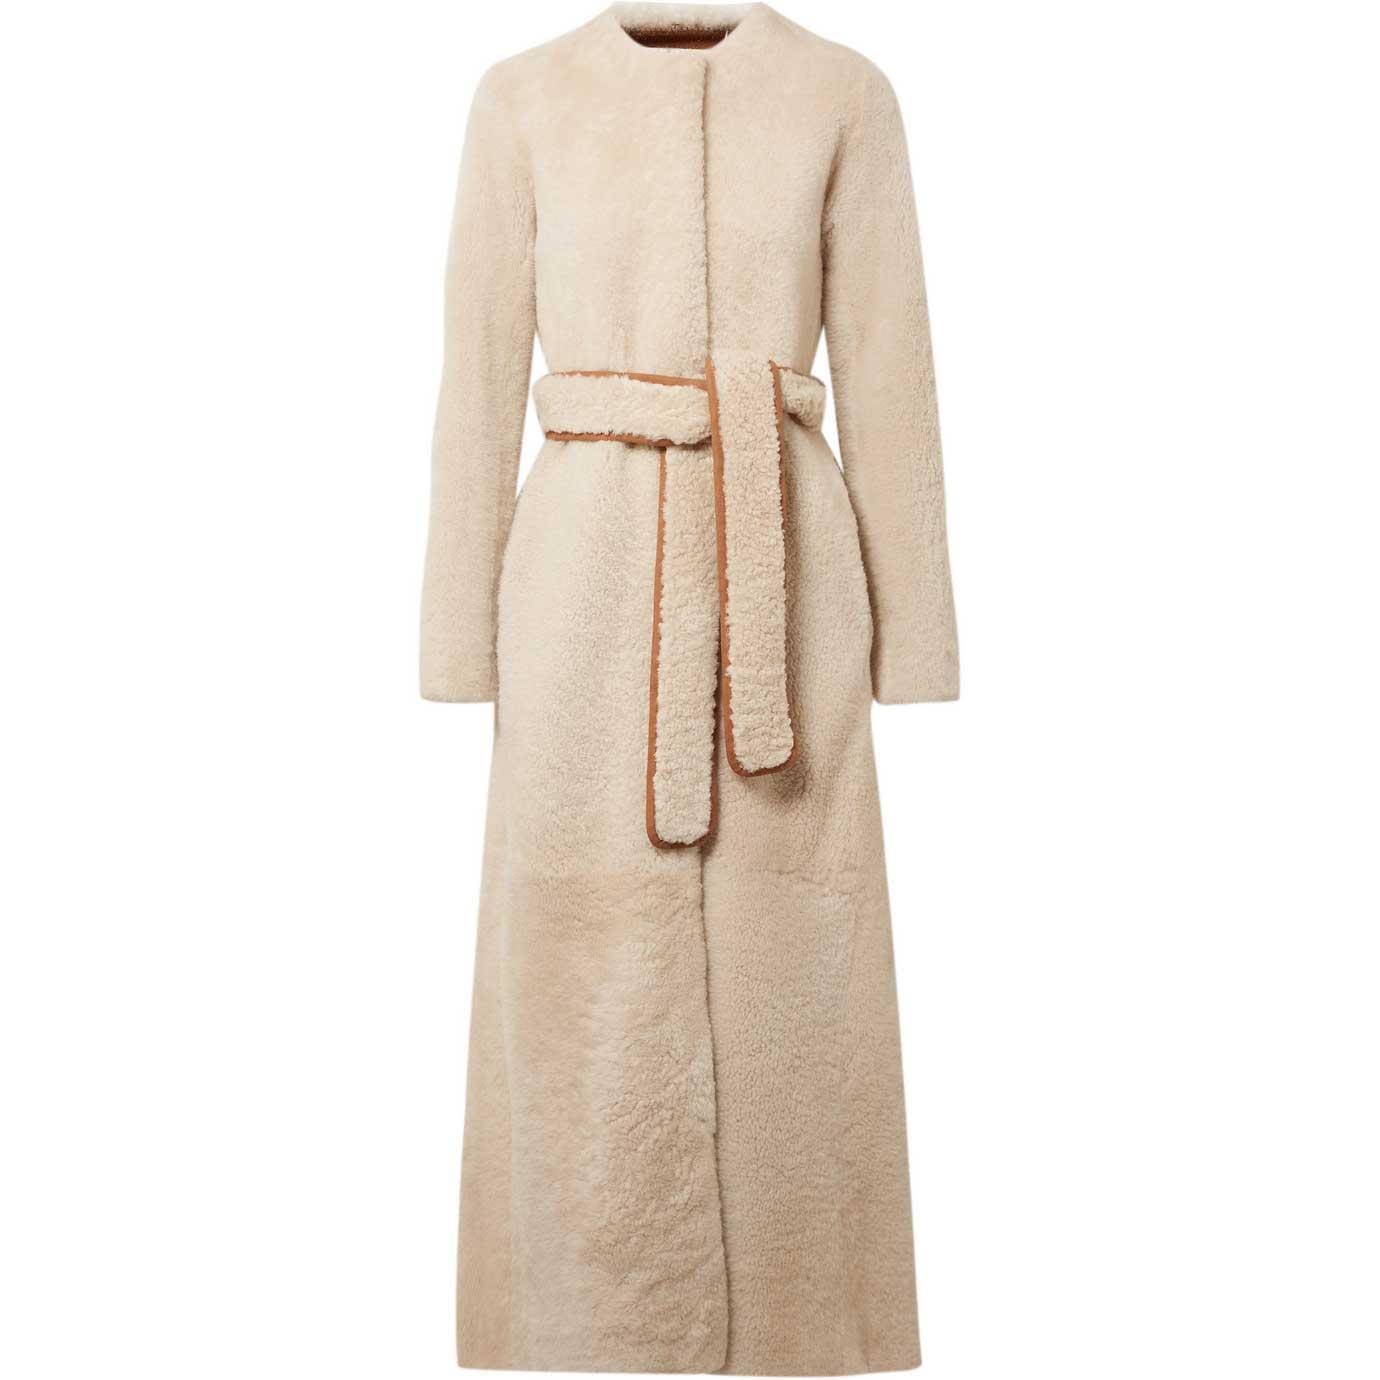 Autumn Sleeves: Statement-making Coats – Luxury London